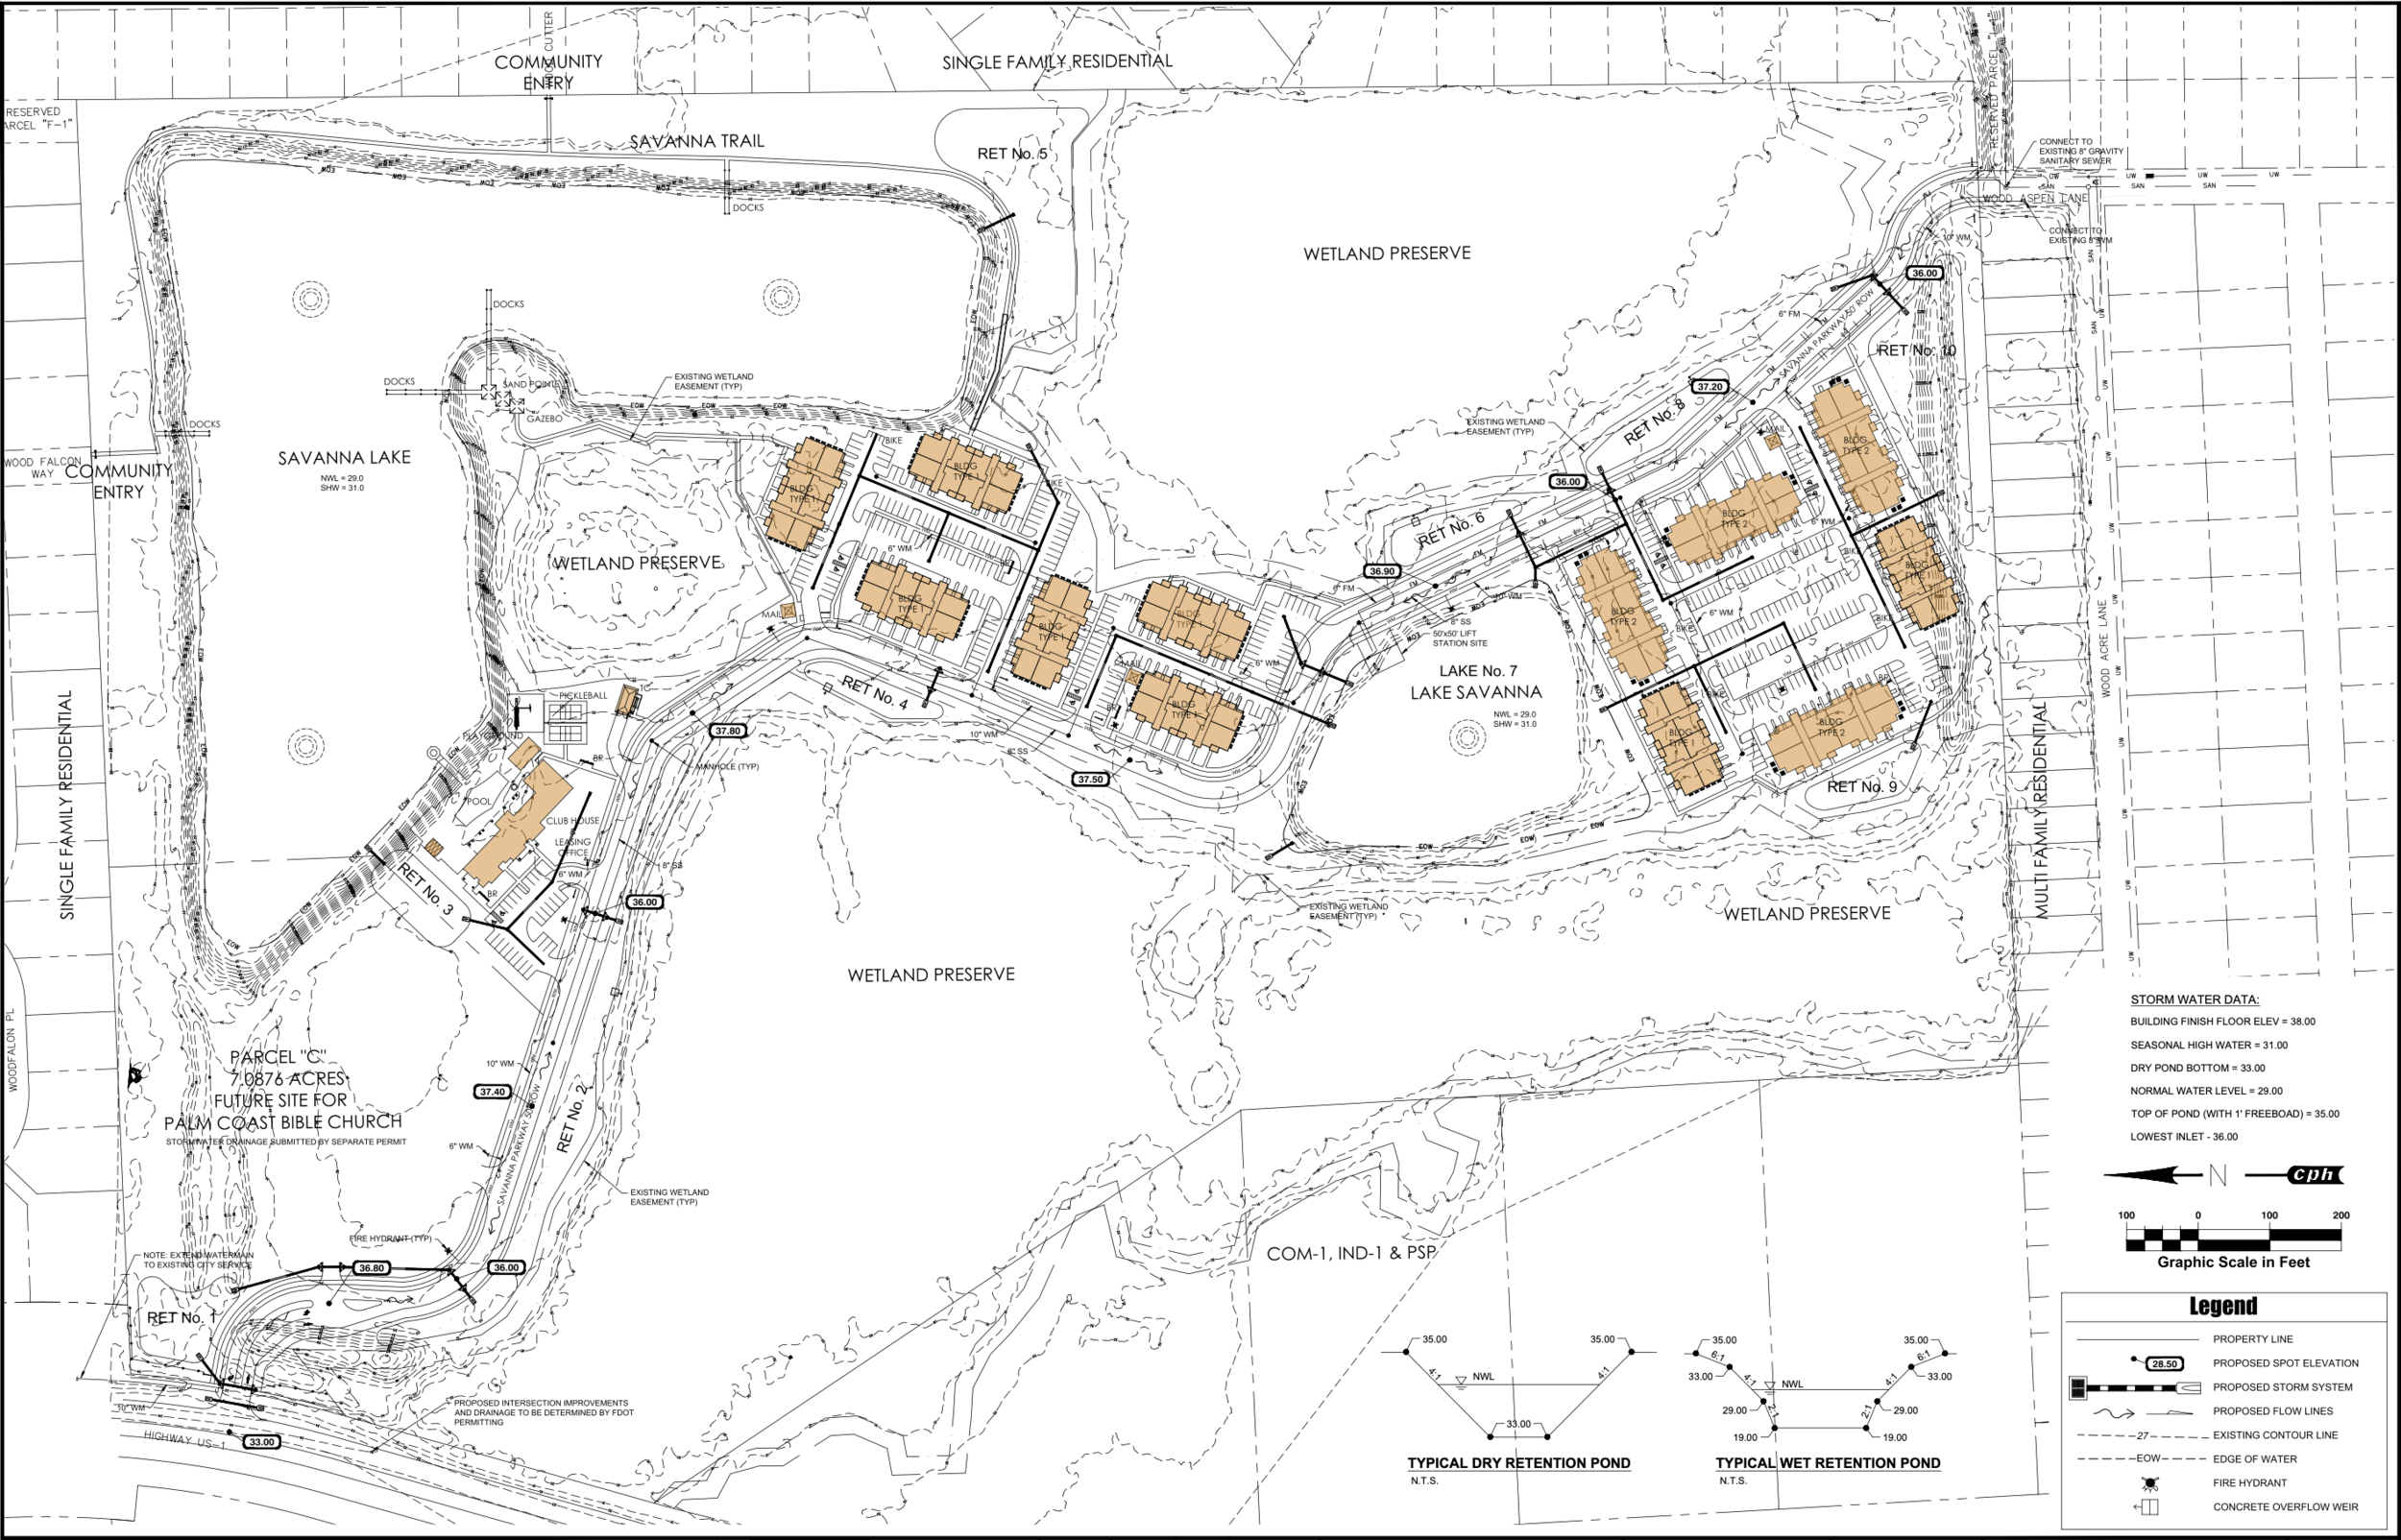 02 - Aviara Palm Coast - Site Plan.png